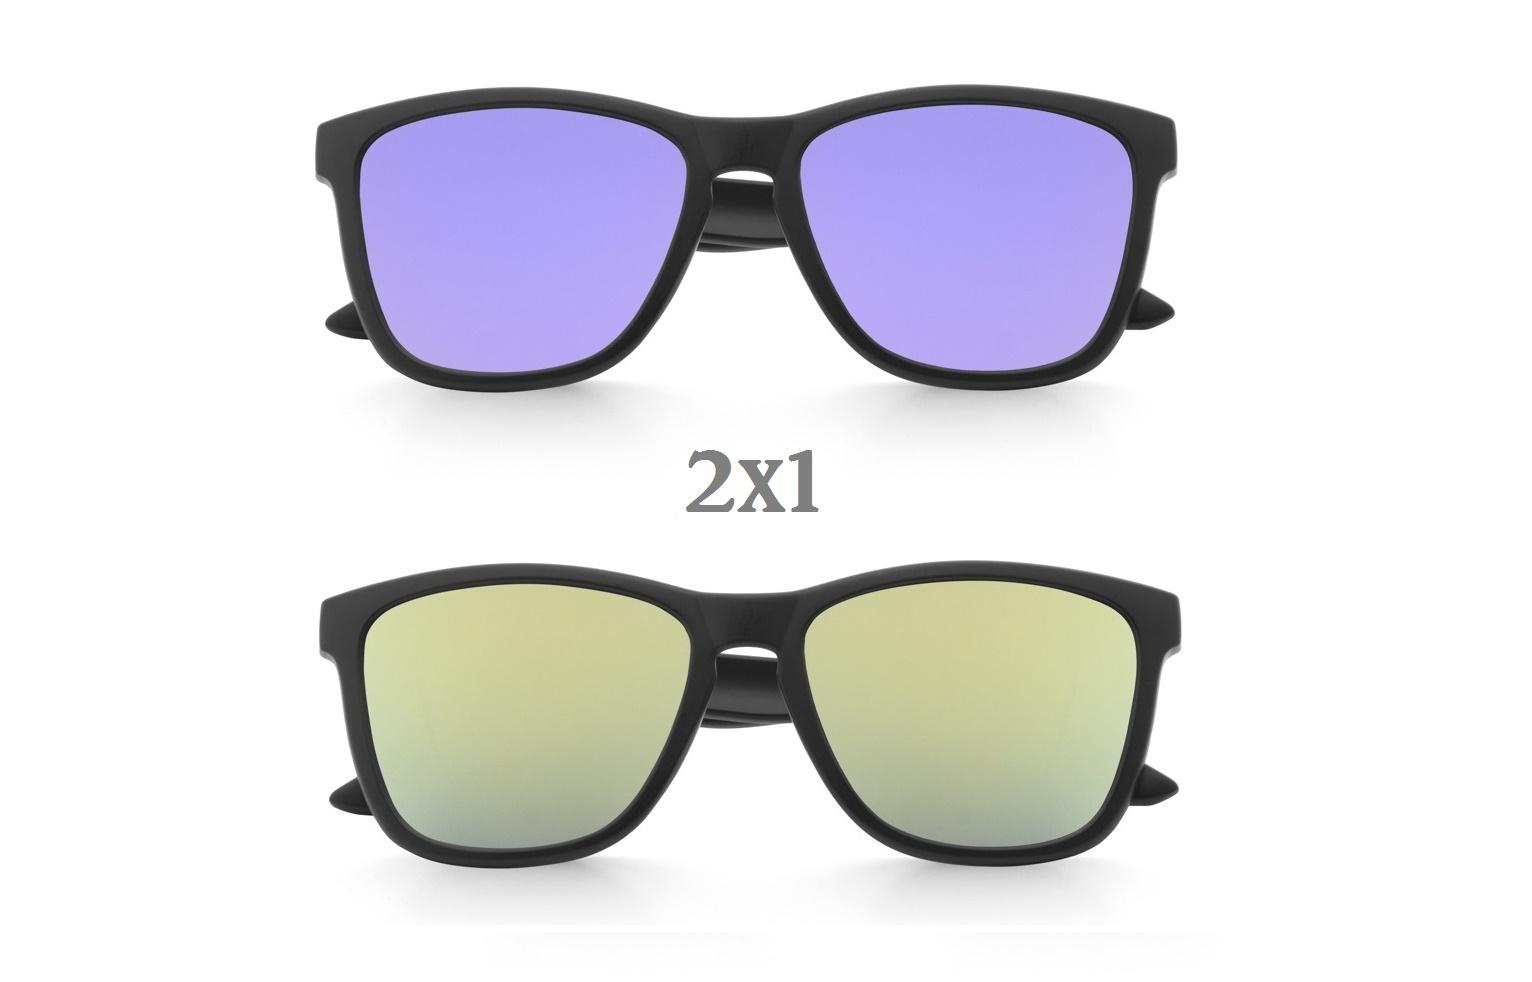 Comprar Dos gafas por una - Mosca Negra - online